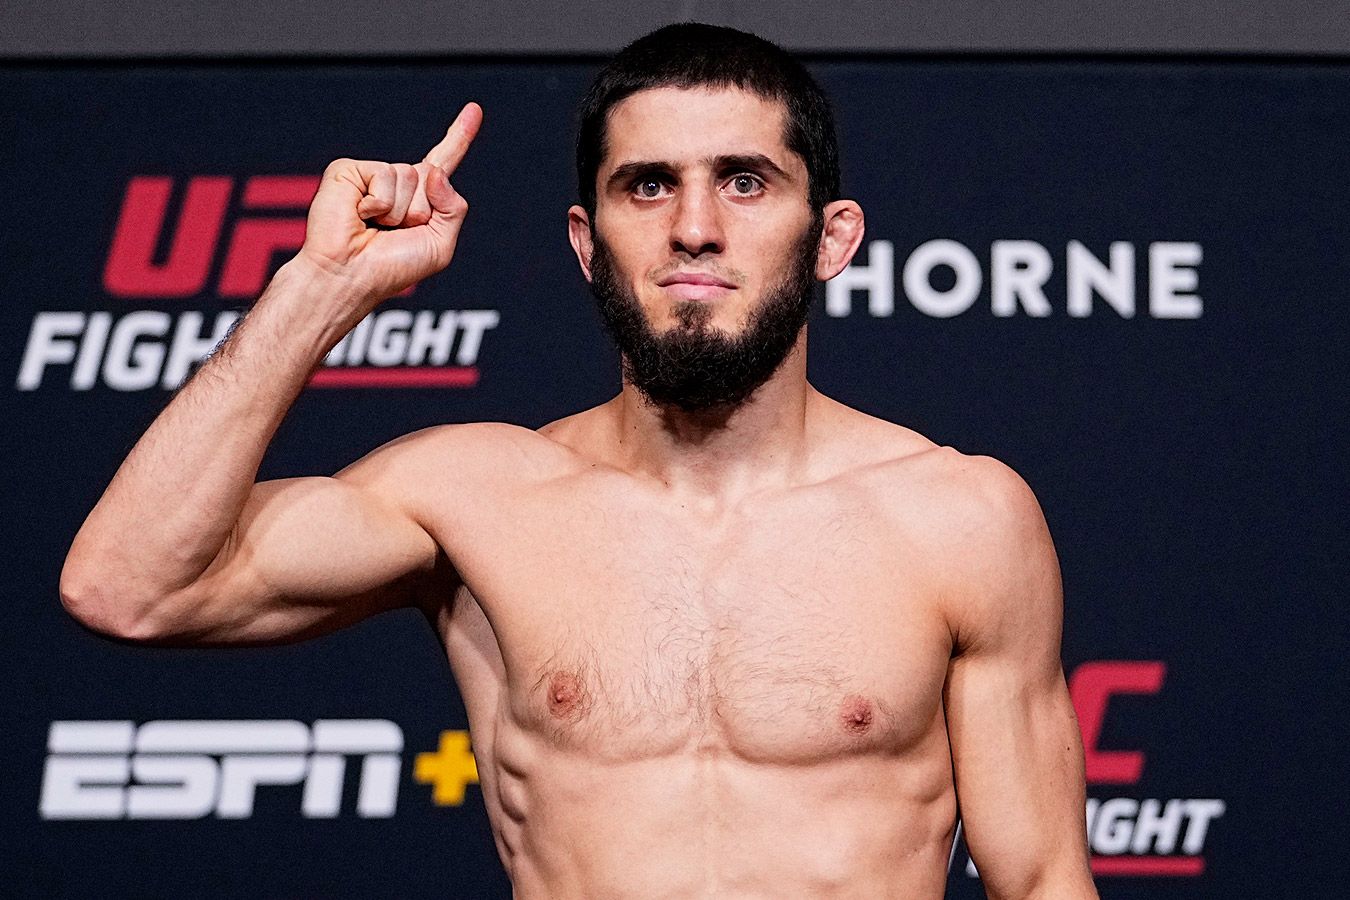 Боец UFC Энтони Смит: Хабиб и Ислам очень умны